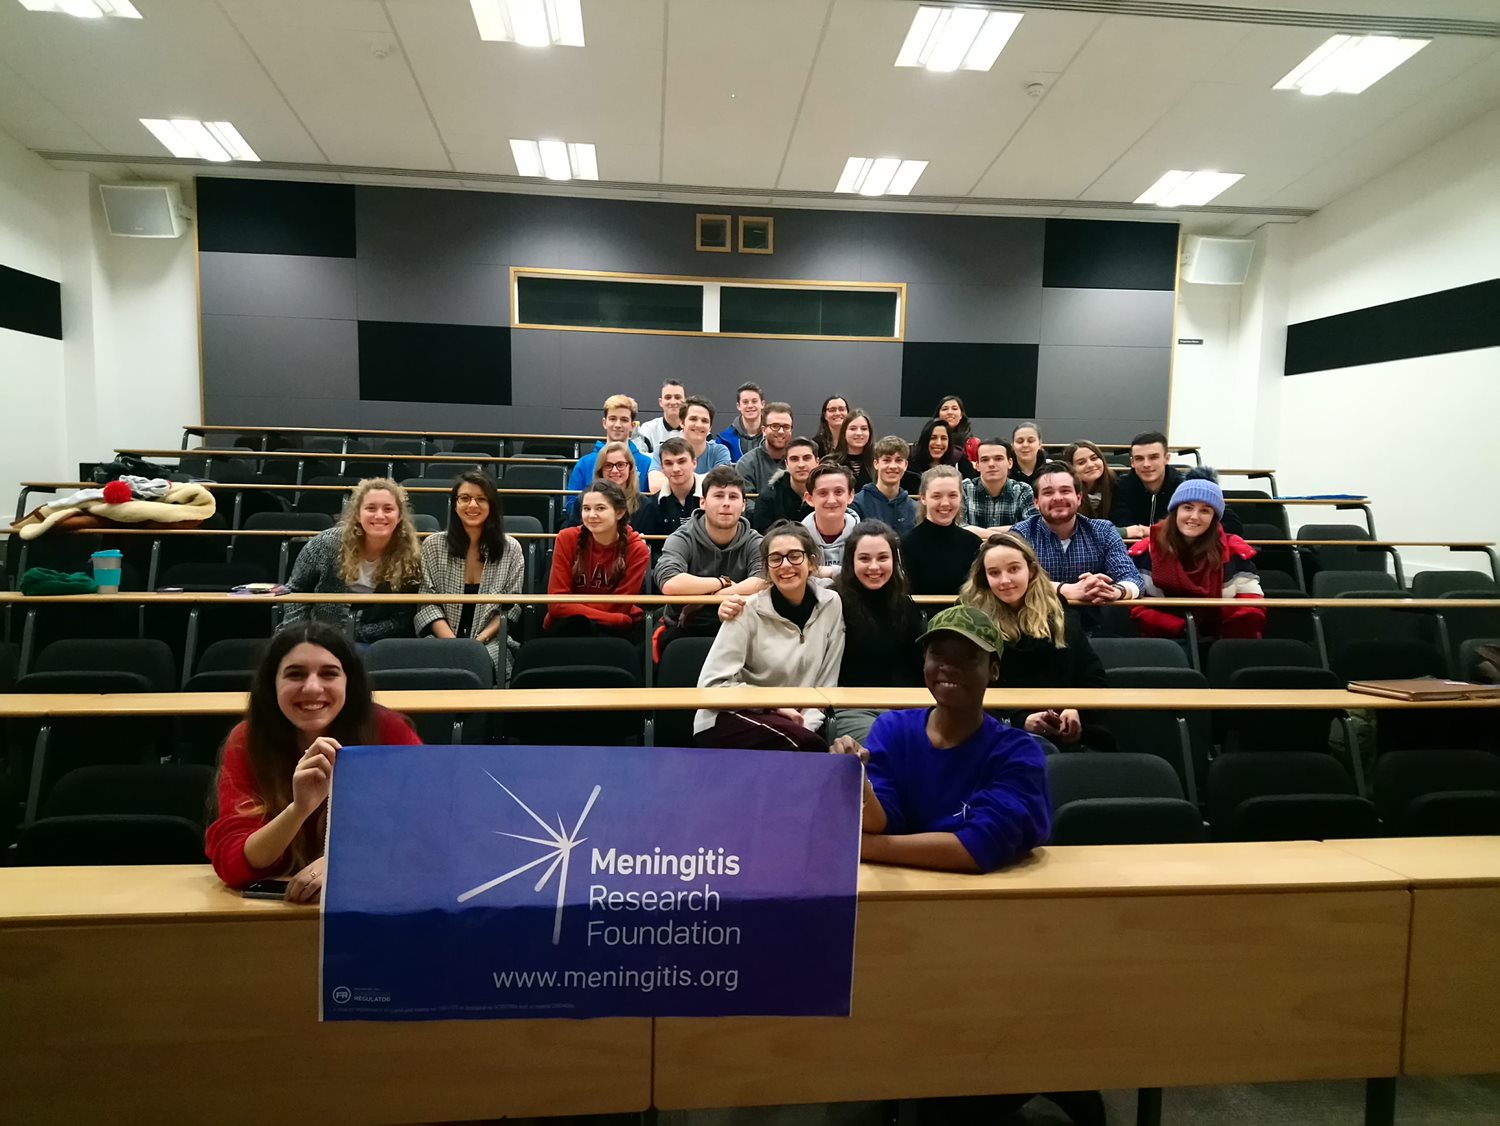 University students across the UK and Ireland learn about meningitis